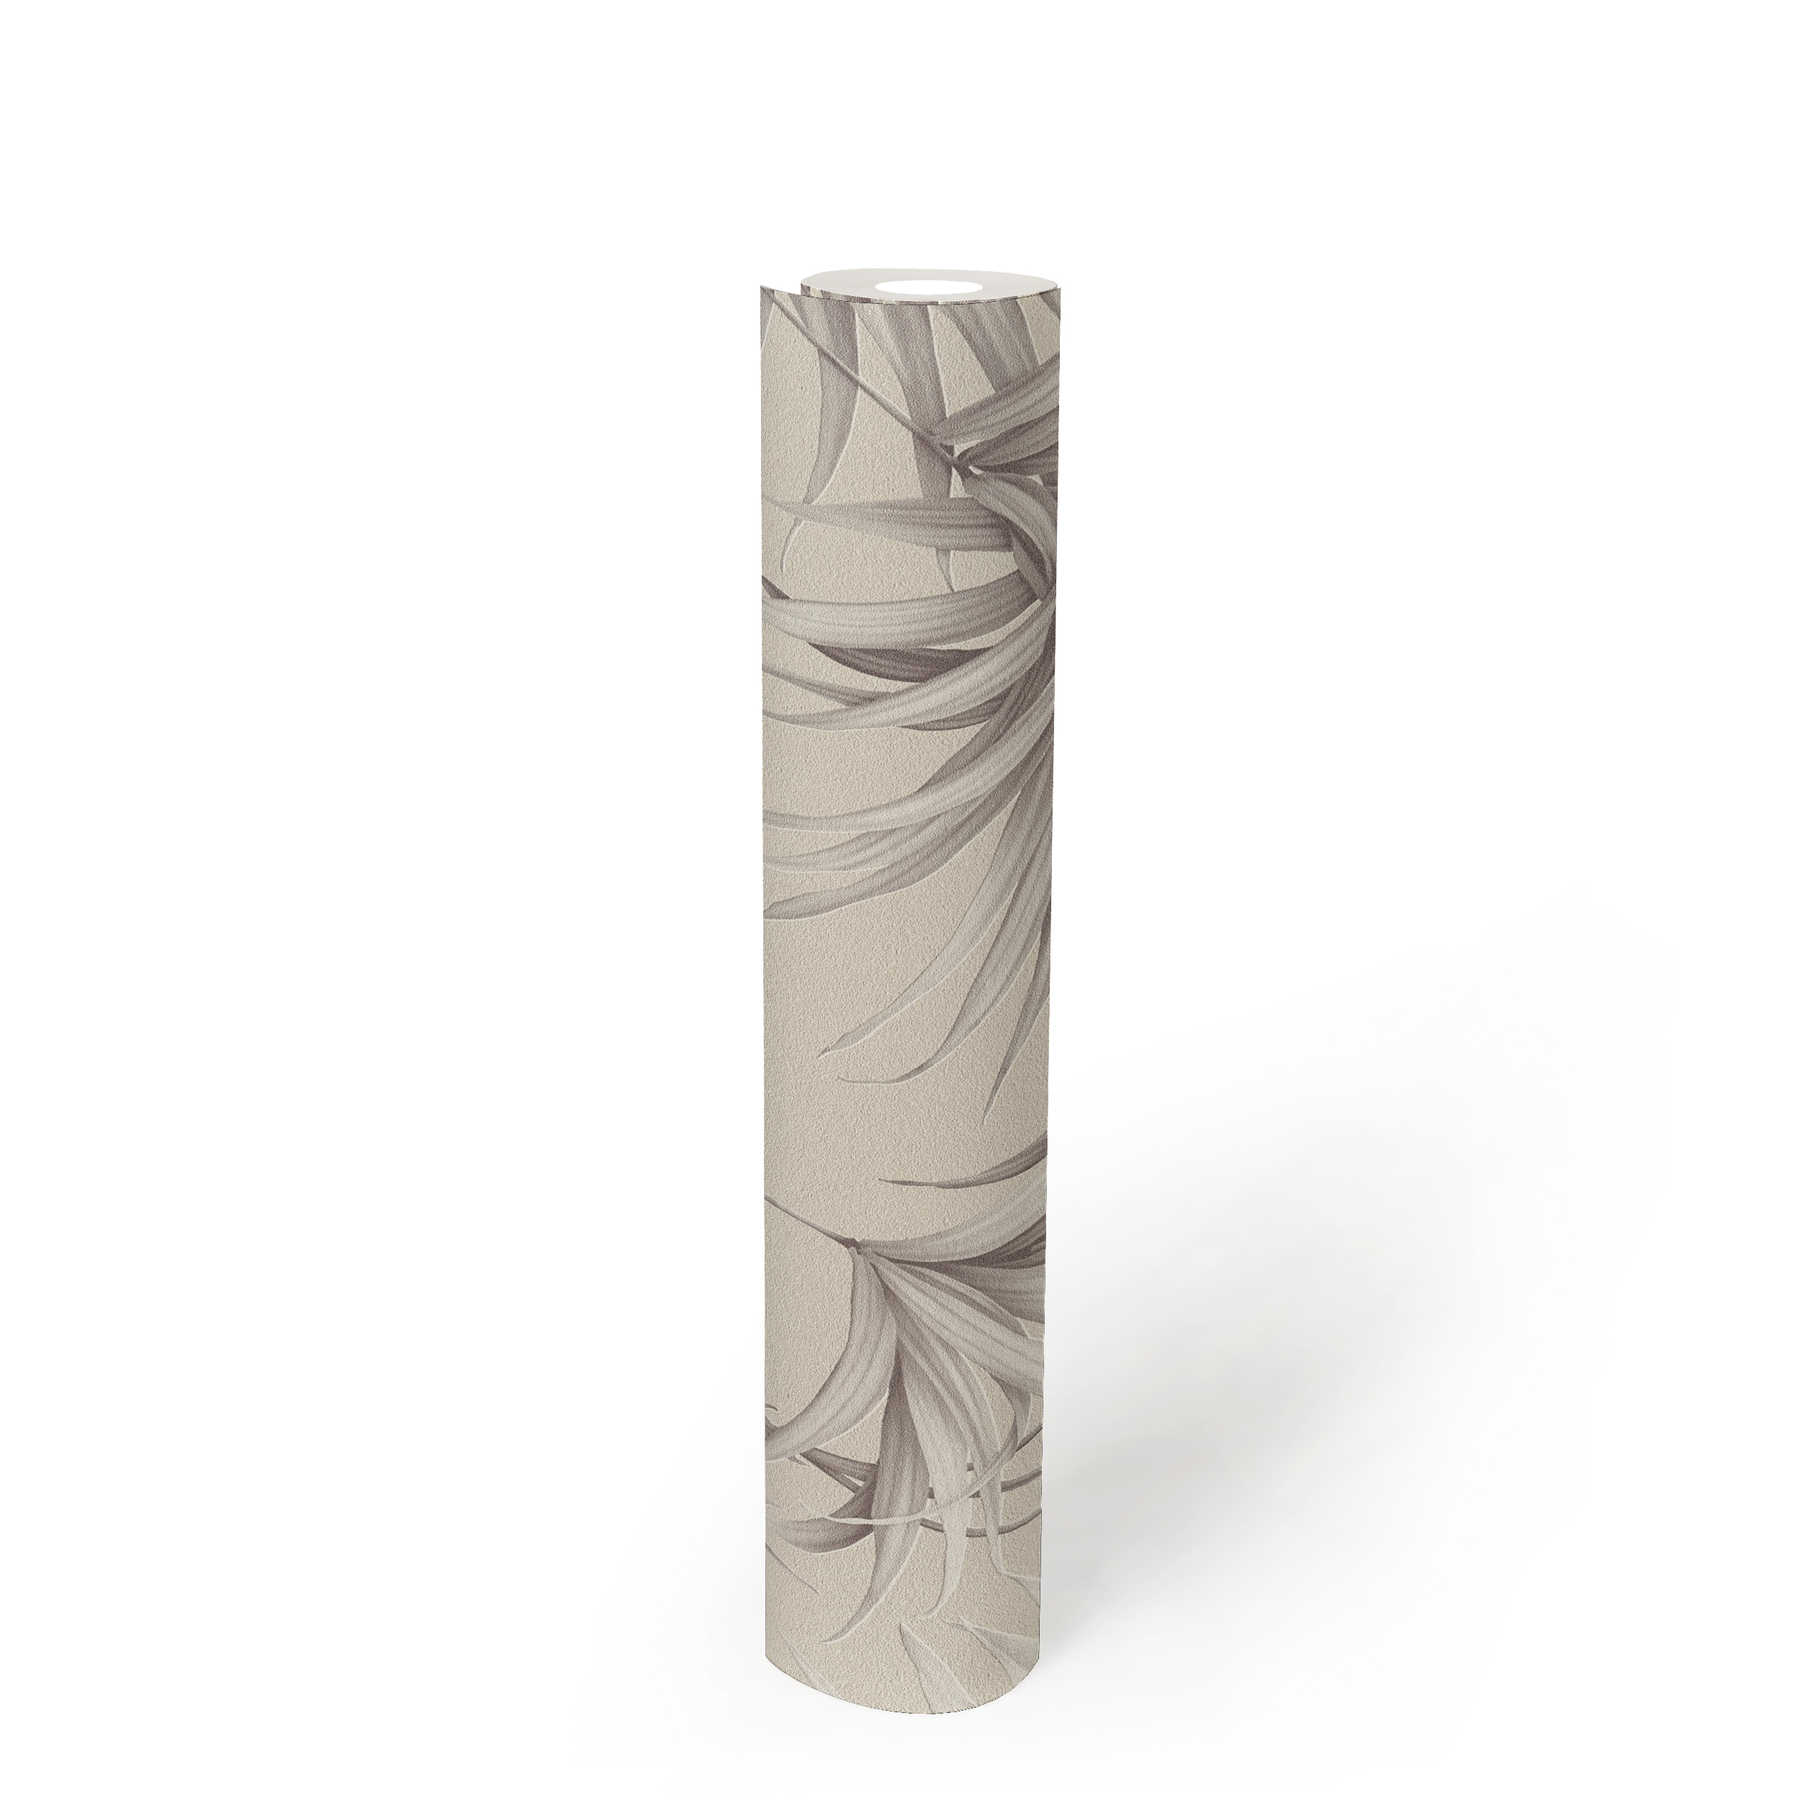             Feuilles de palmier papier peint avec effet structuré - beige, gris
        